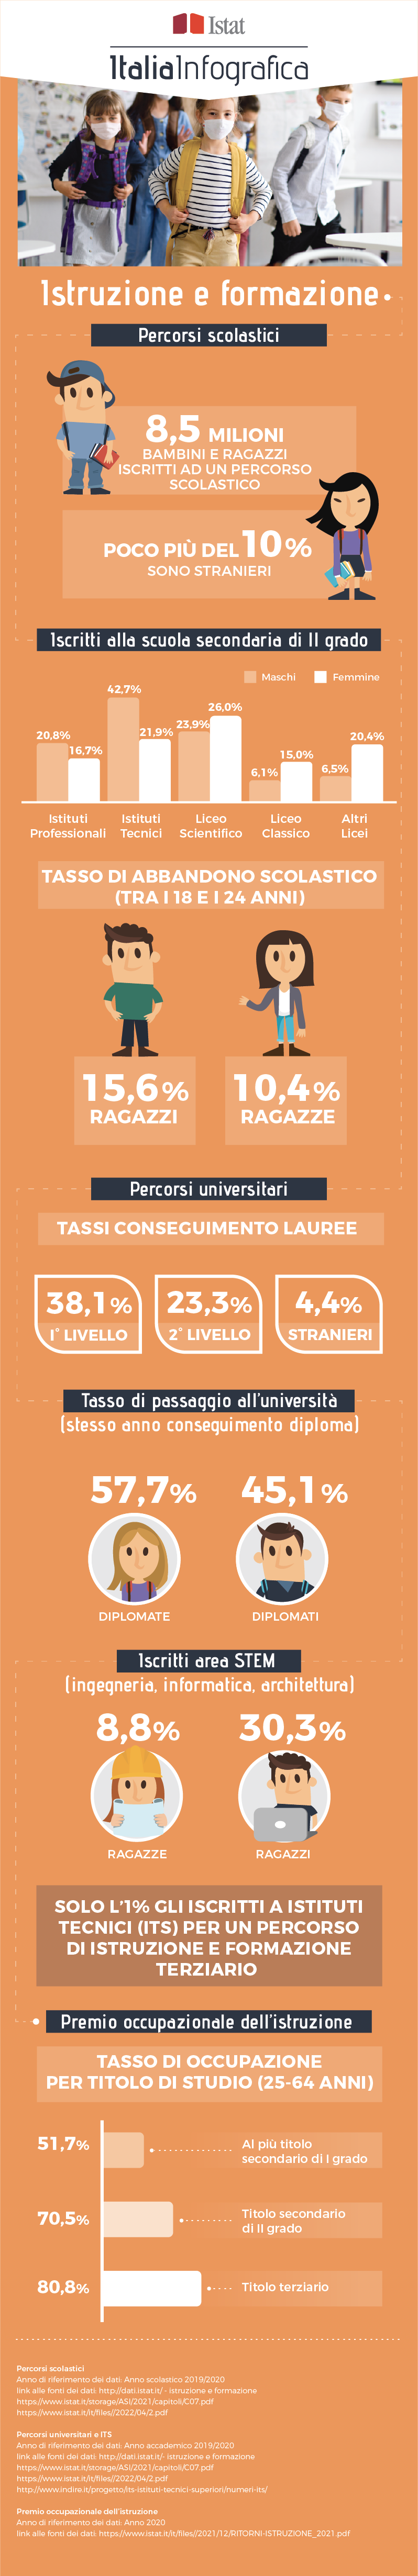 immagine di infografica con titolo ItaliaInfografica-Istruzione e formazione